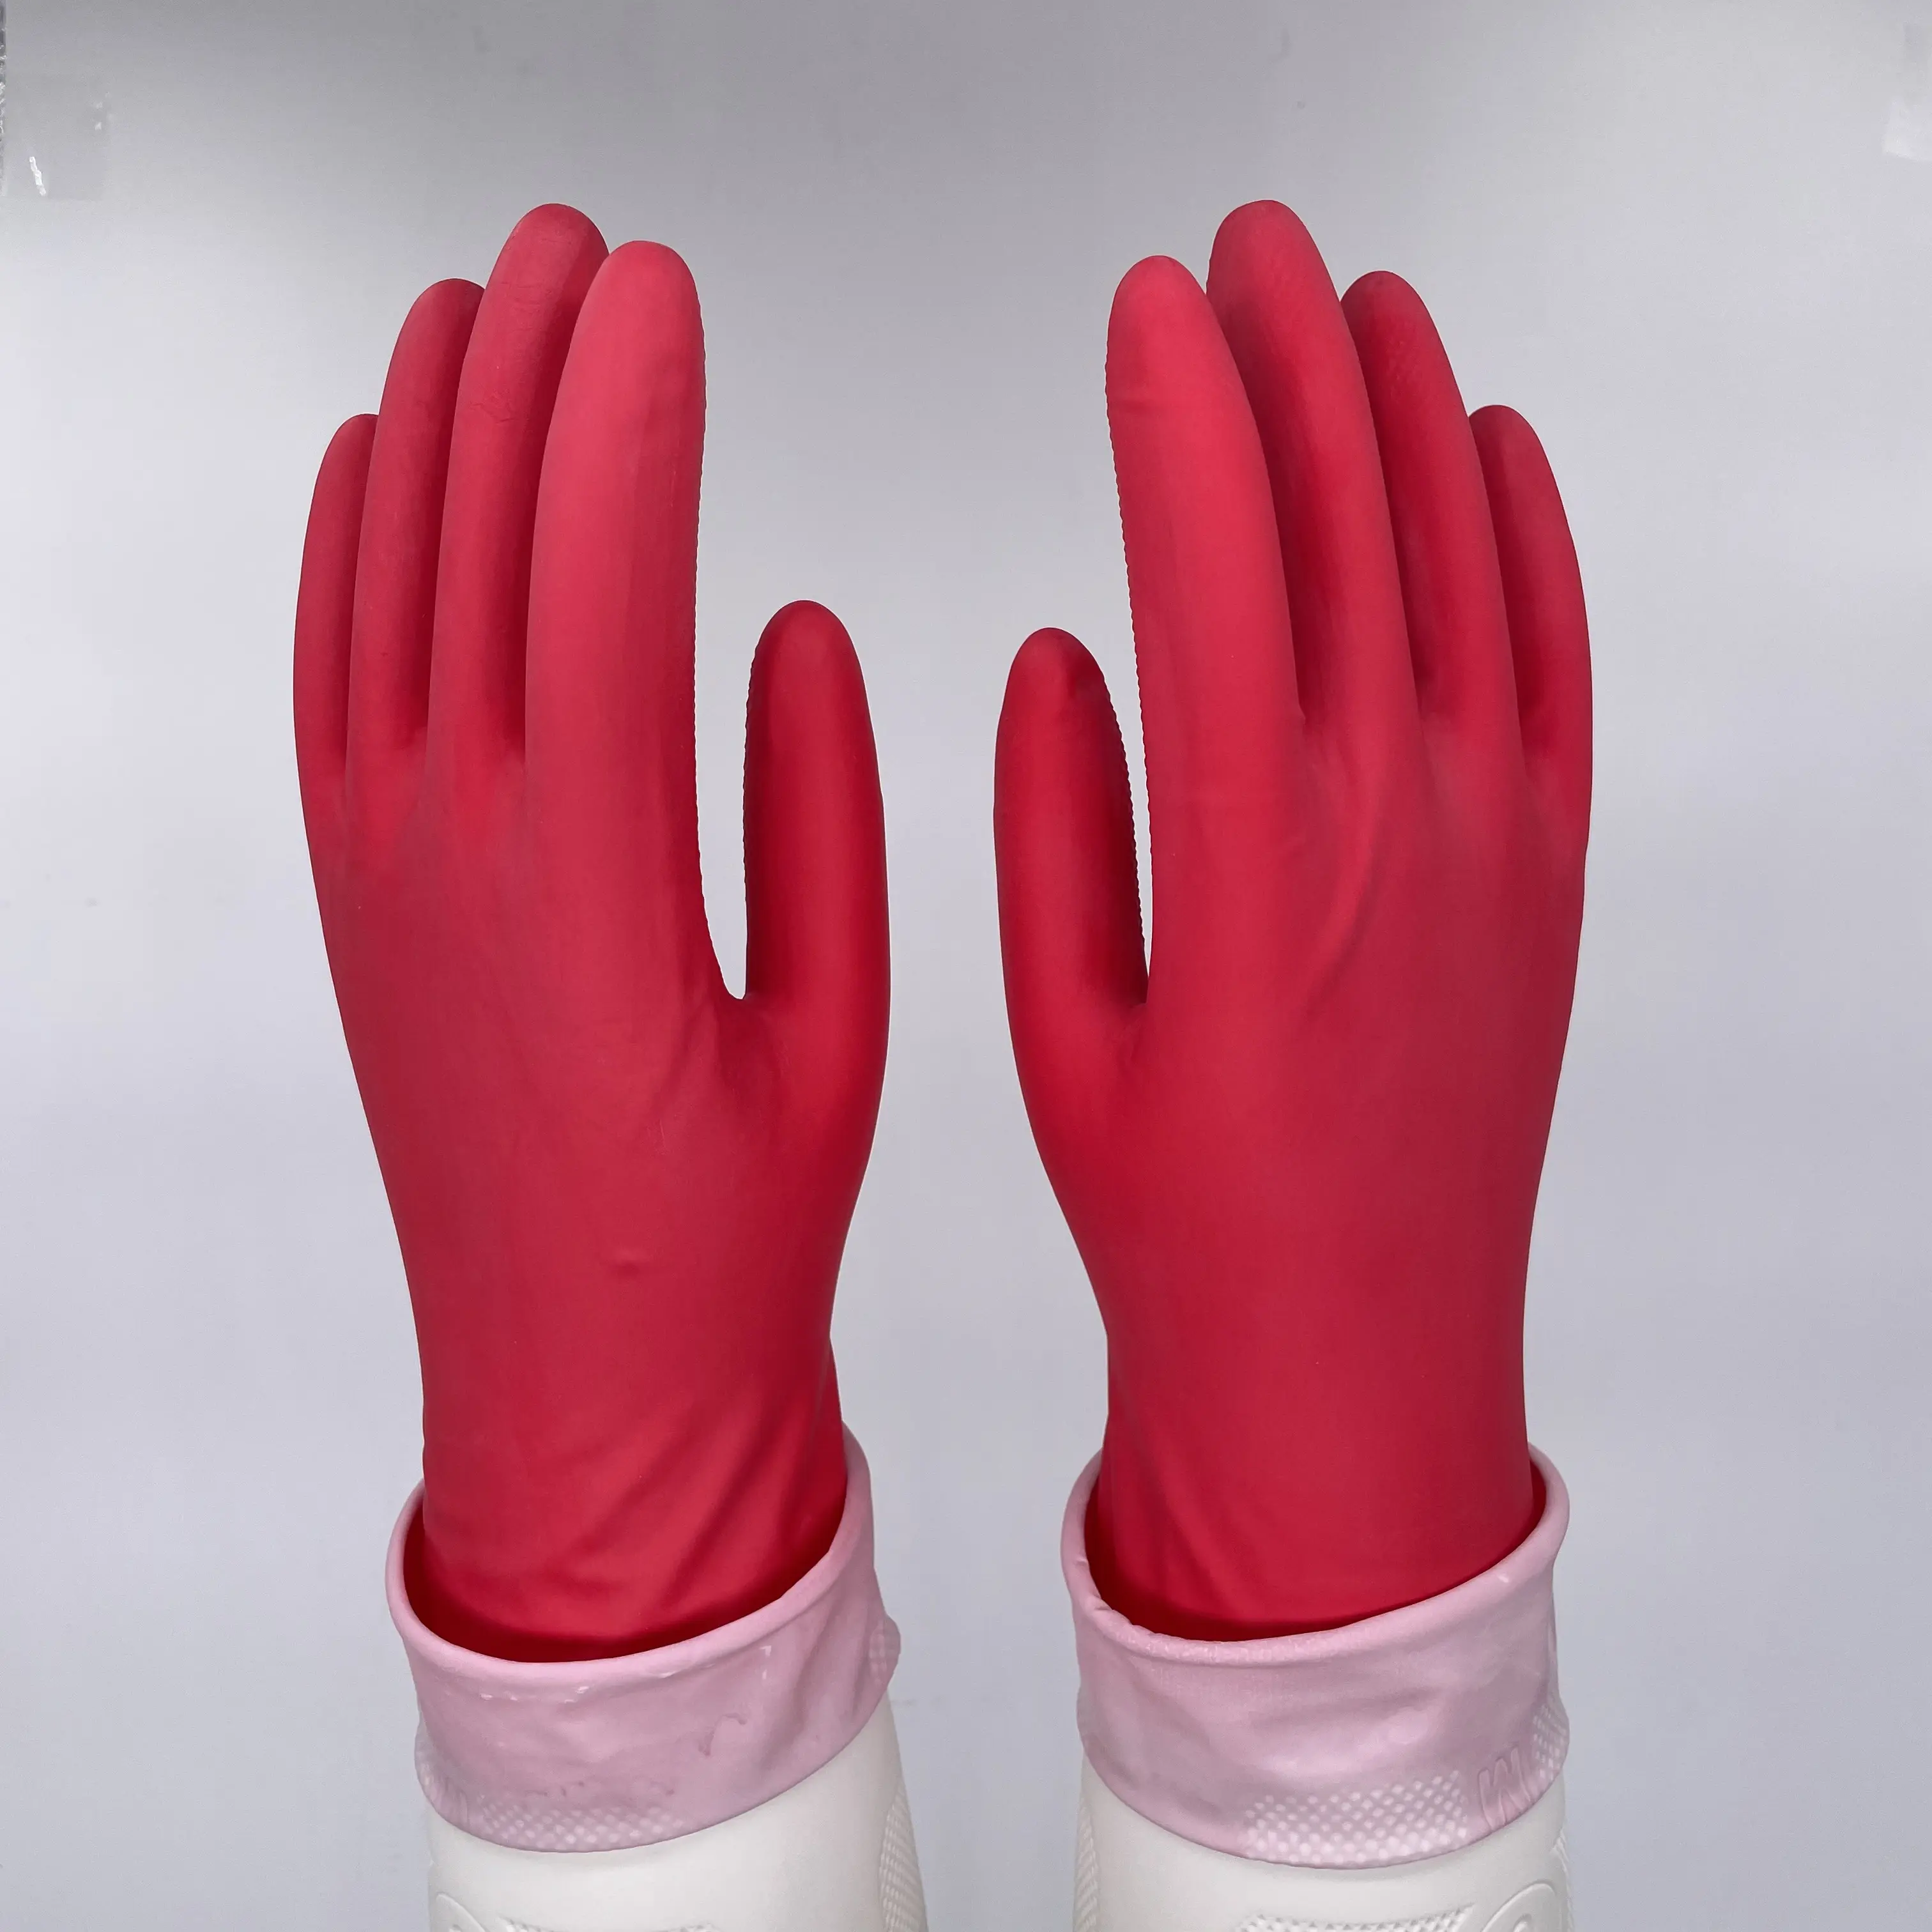 IPED-guantes forrados de látex para el hogar, guantes de limpieza de goma